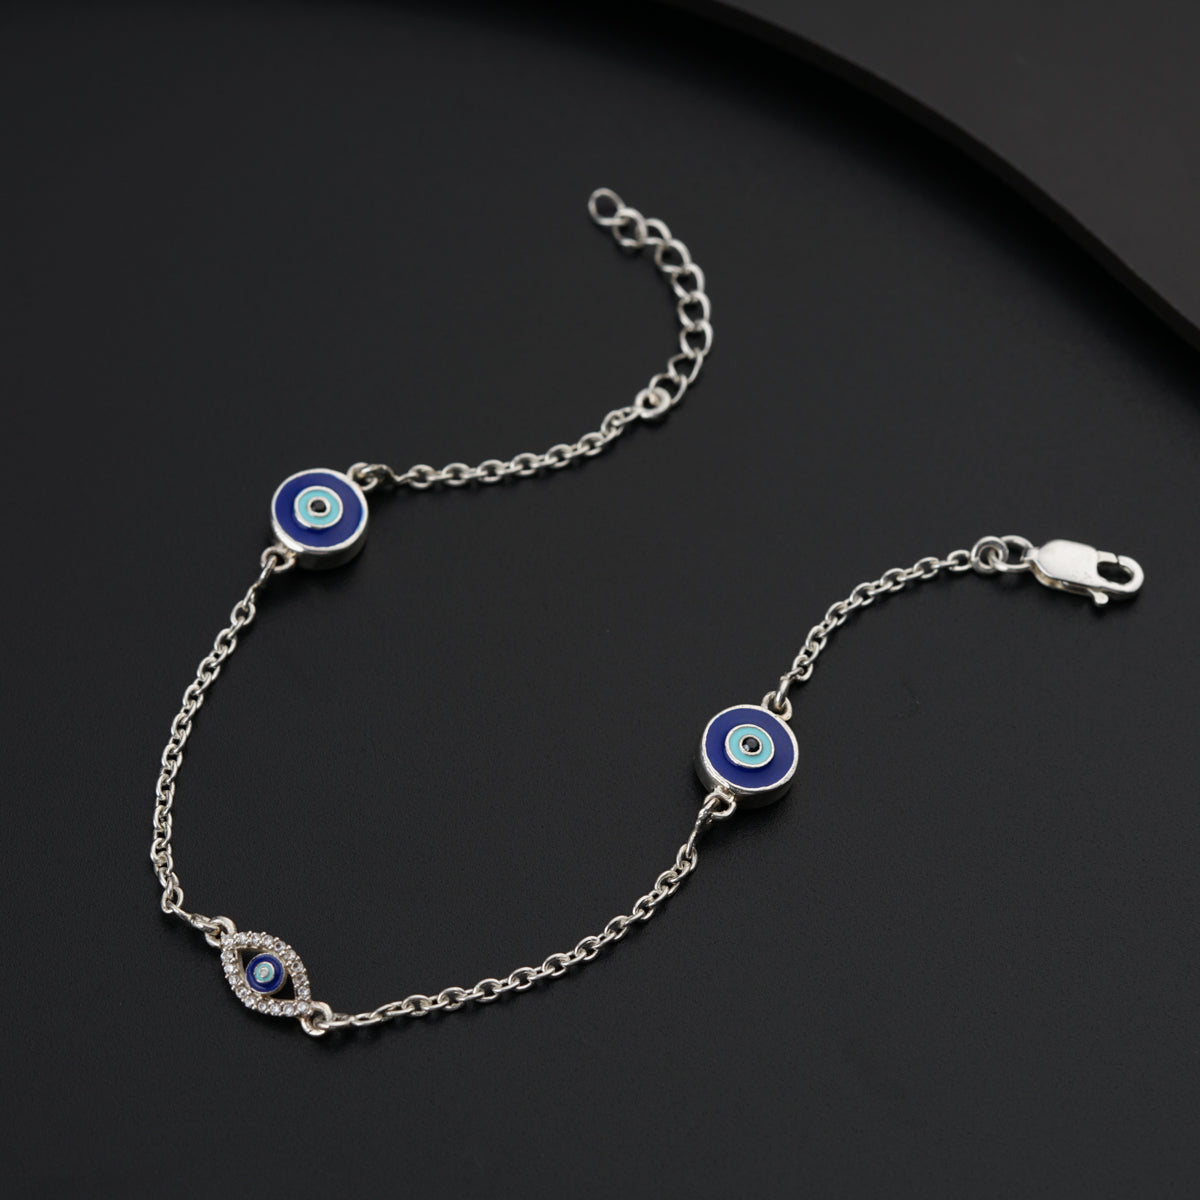 a blue evil eye bracelet on a black surface